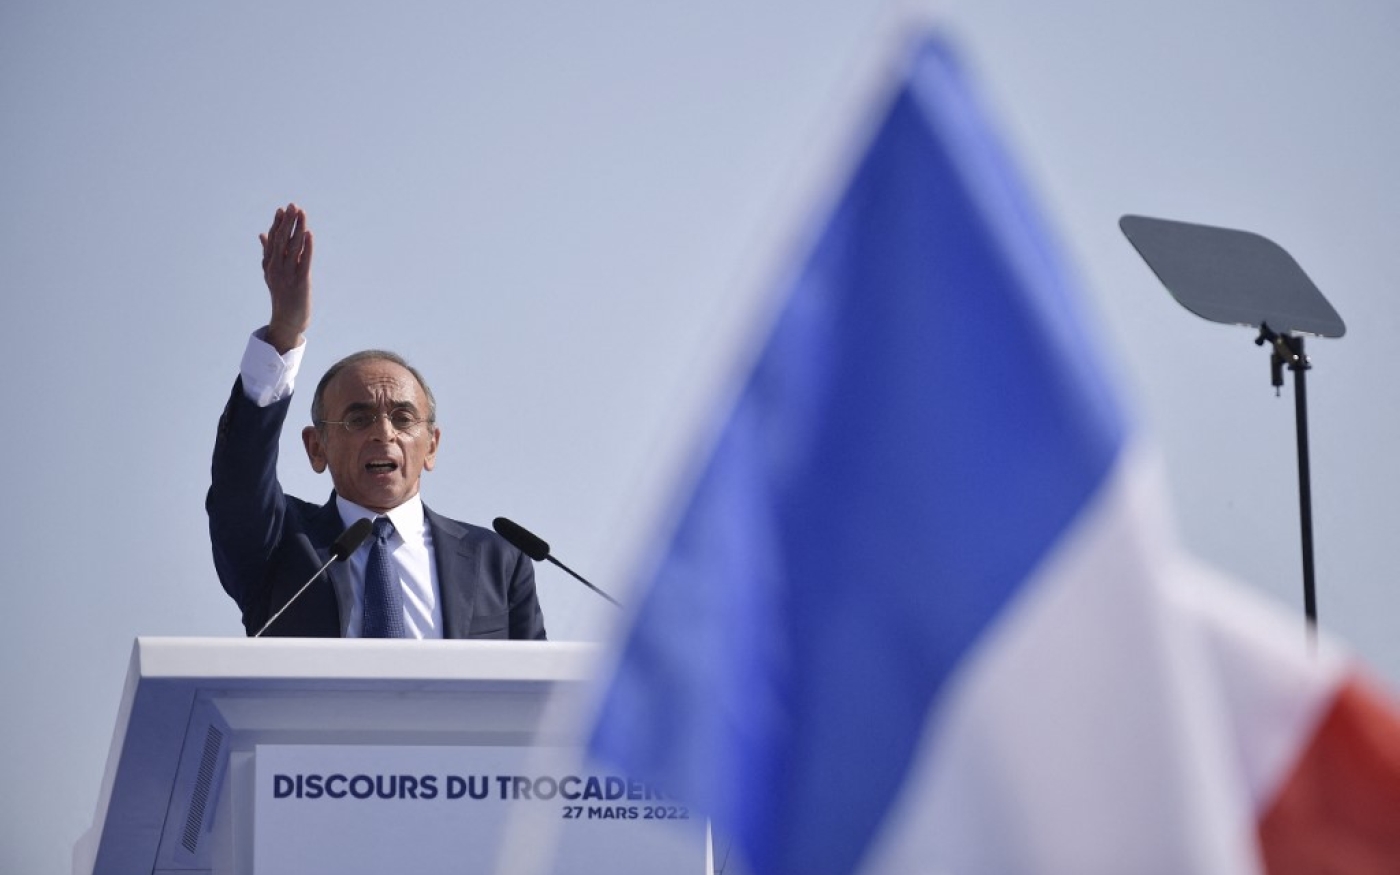 Le président du parti et candidat à la présidentielle Éric Zemmour prend la parole lors d’un meeting de campagne sur la place du Trocadéro à Paris le 27 mars 2022 (AFP/Julien De Rosa)